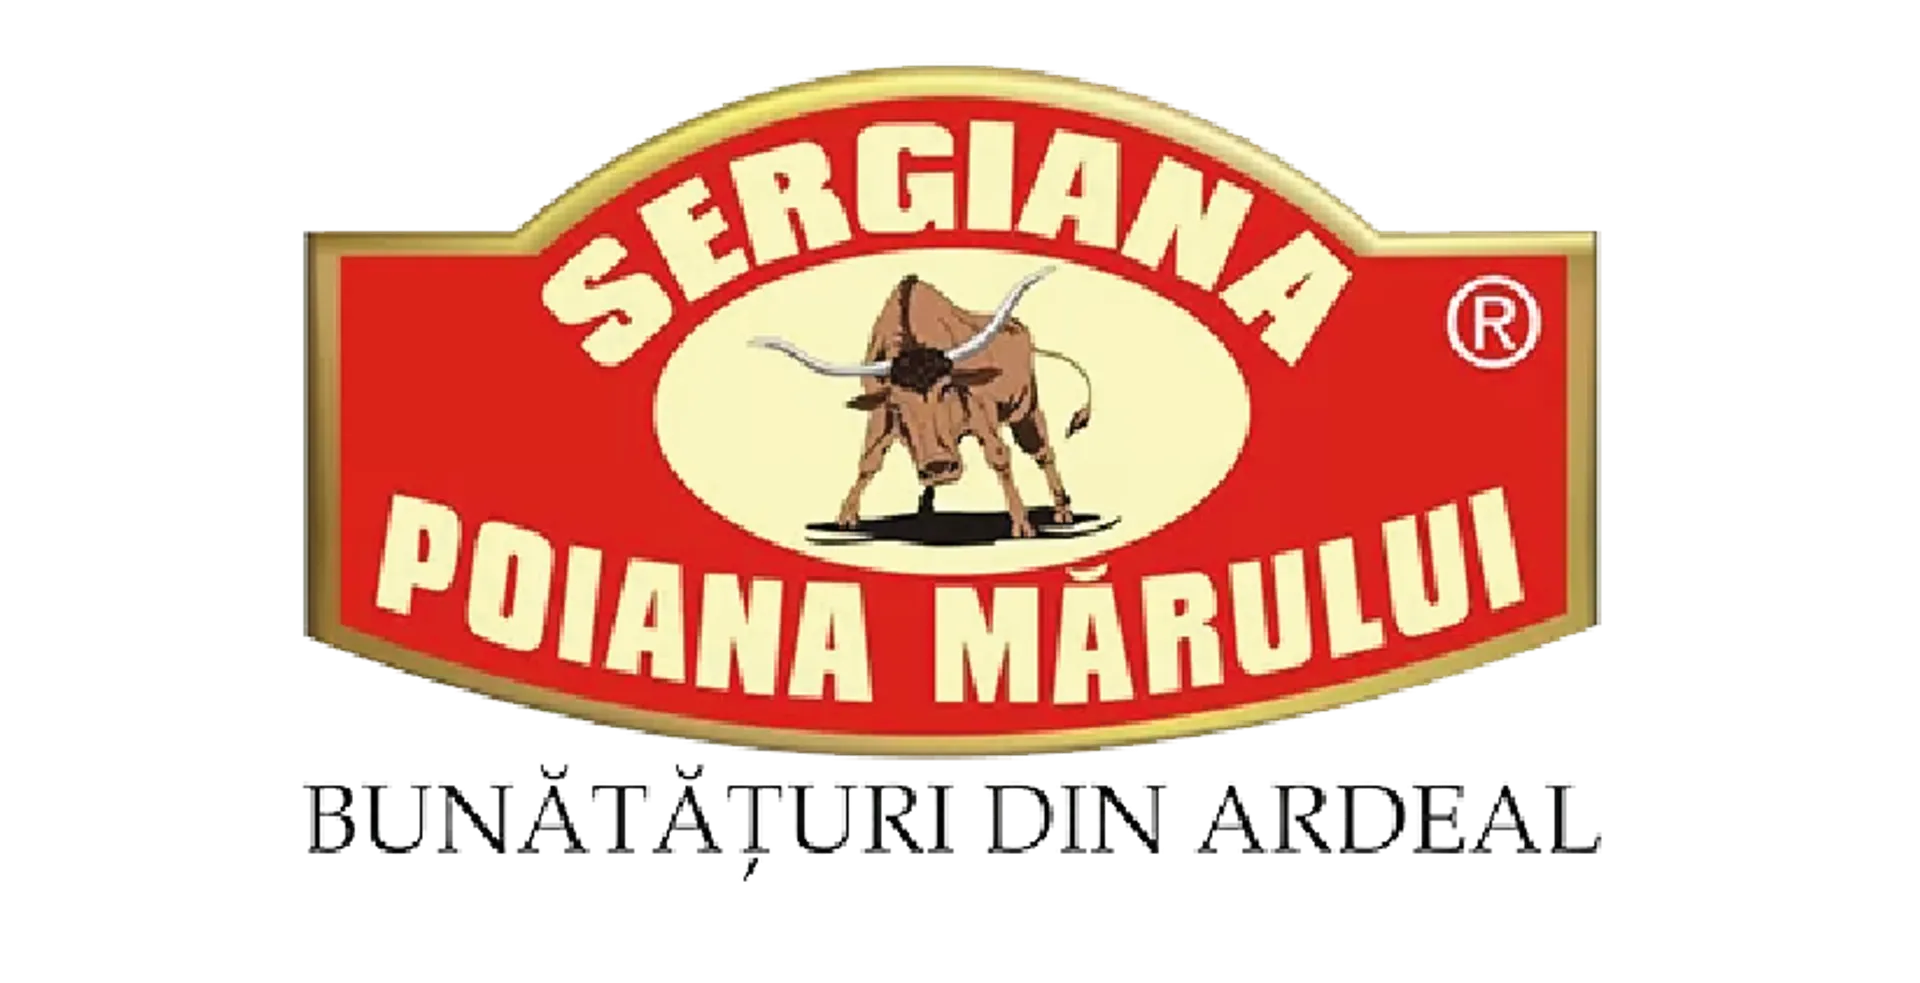 SERGIANA POIANA MĂRULUI logo